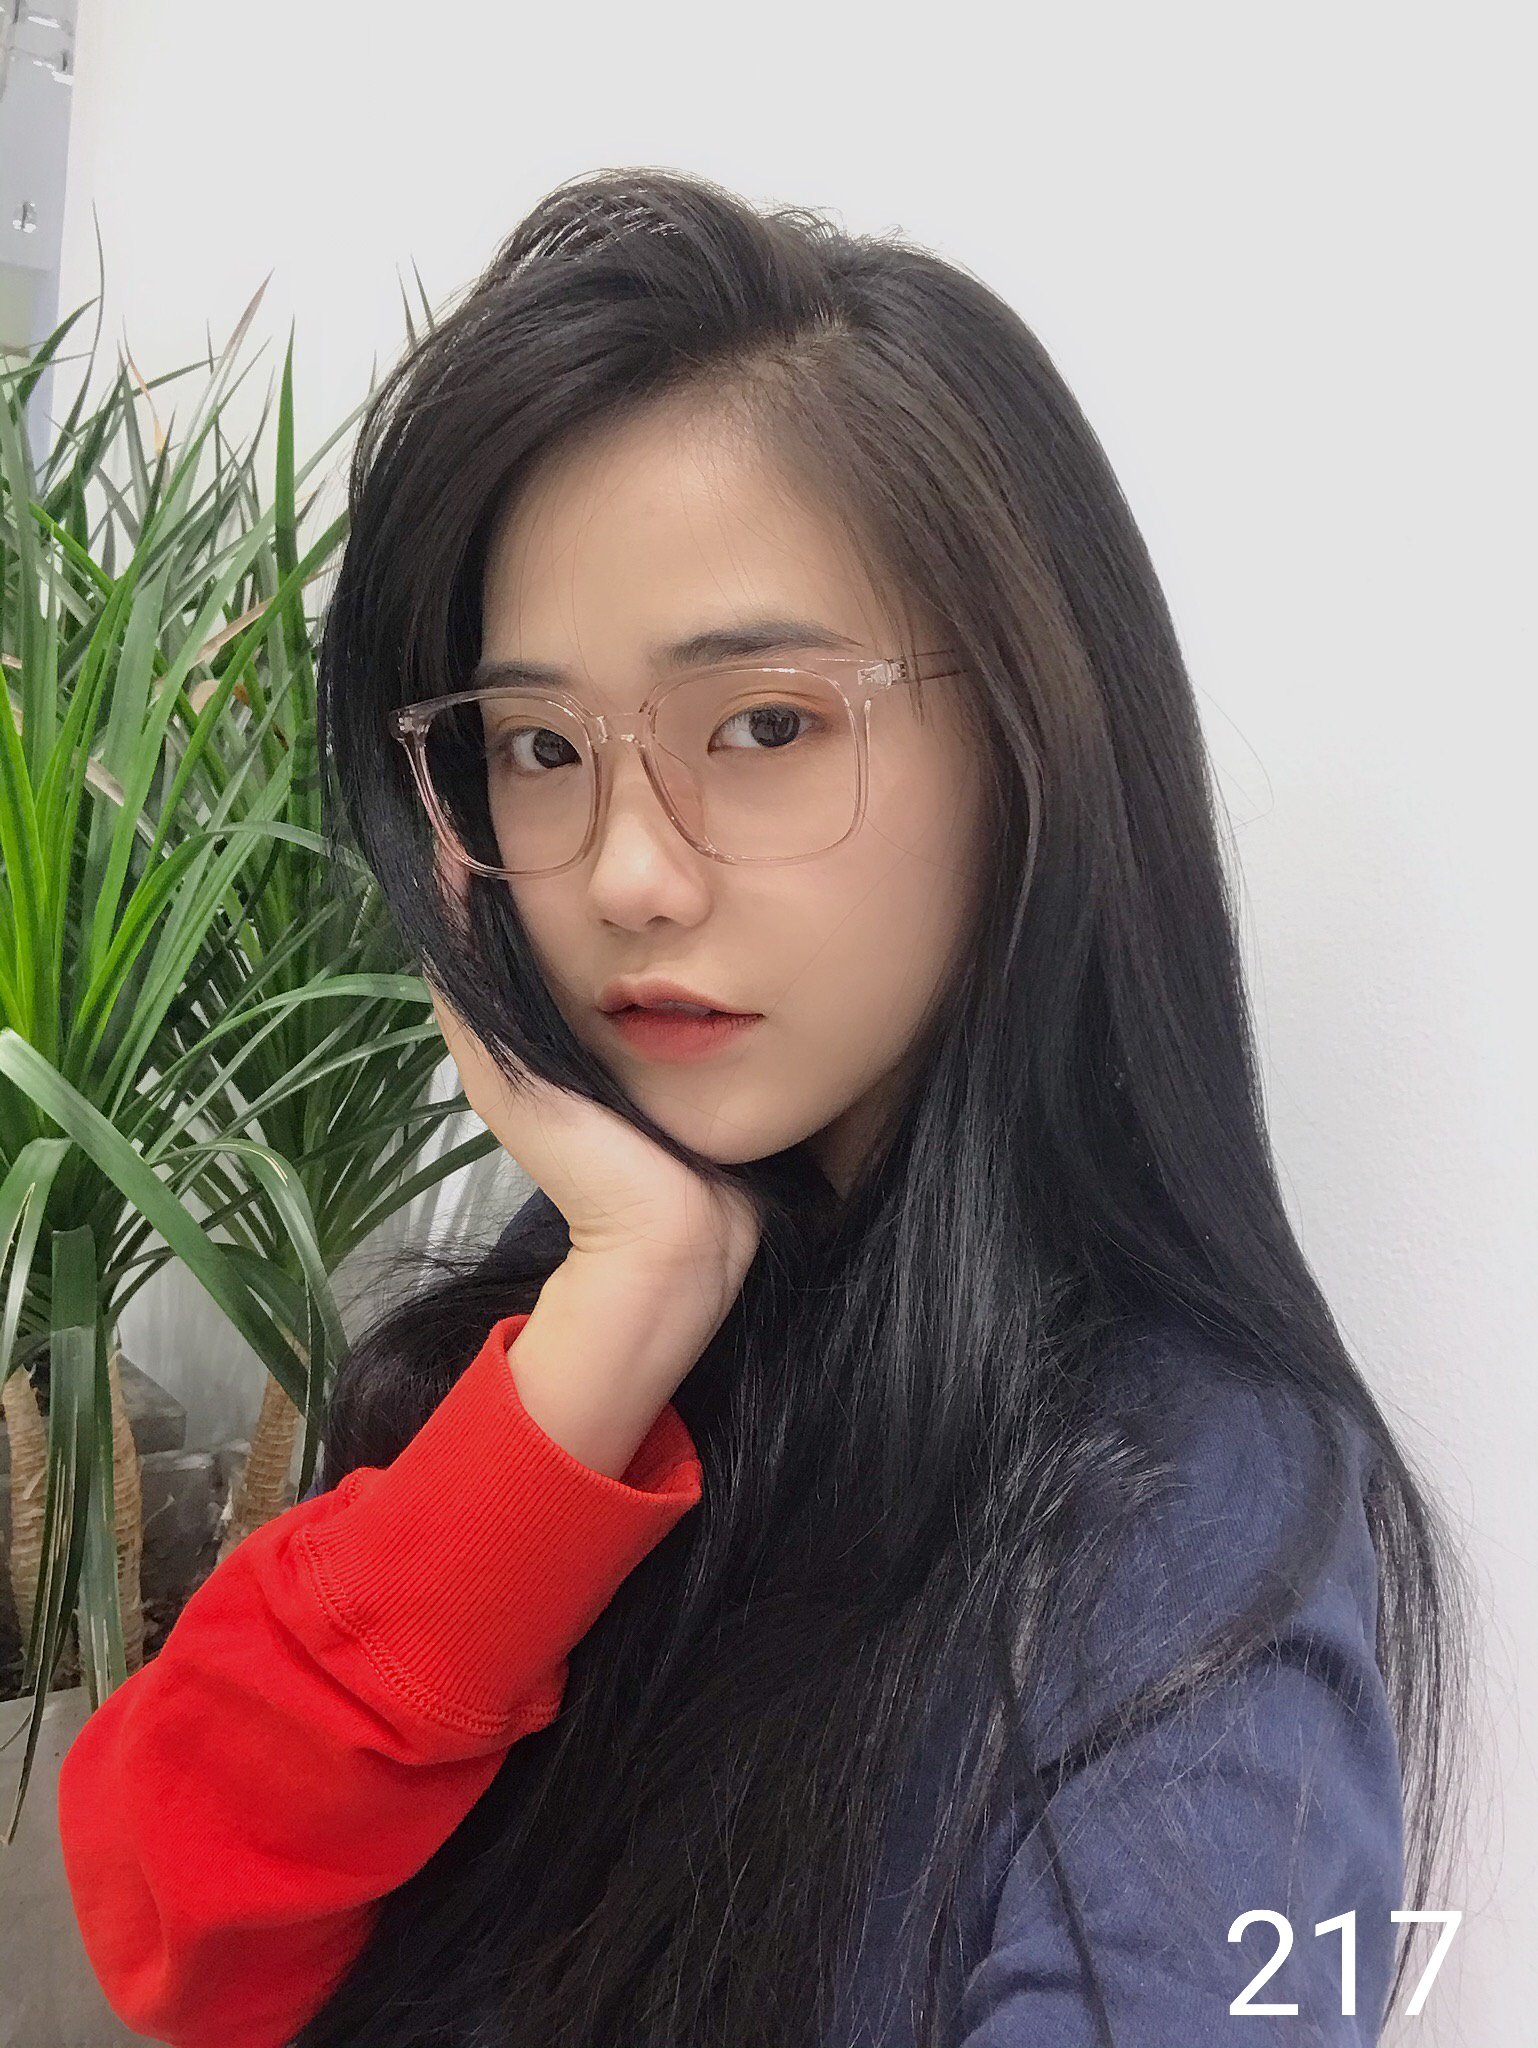 Giá bán Kính cận nam nữ Lily Eyewear 217 nhựa dẻo, mắt kính gọng vuông phù  hợp với nhiều khuôn mặt, kính Hàn Quốc có độ kính gọng nhựa mắt trong suốt